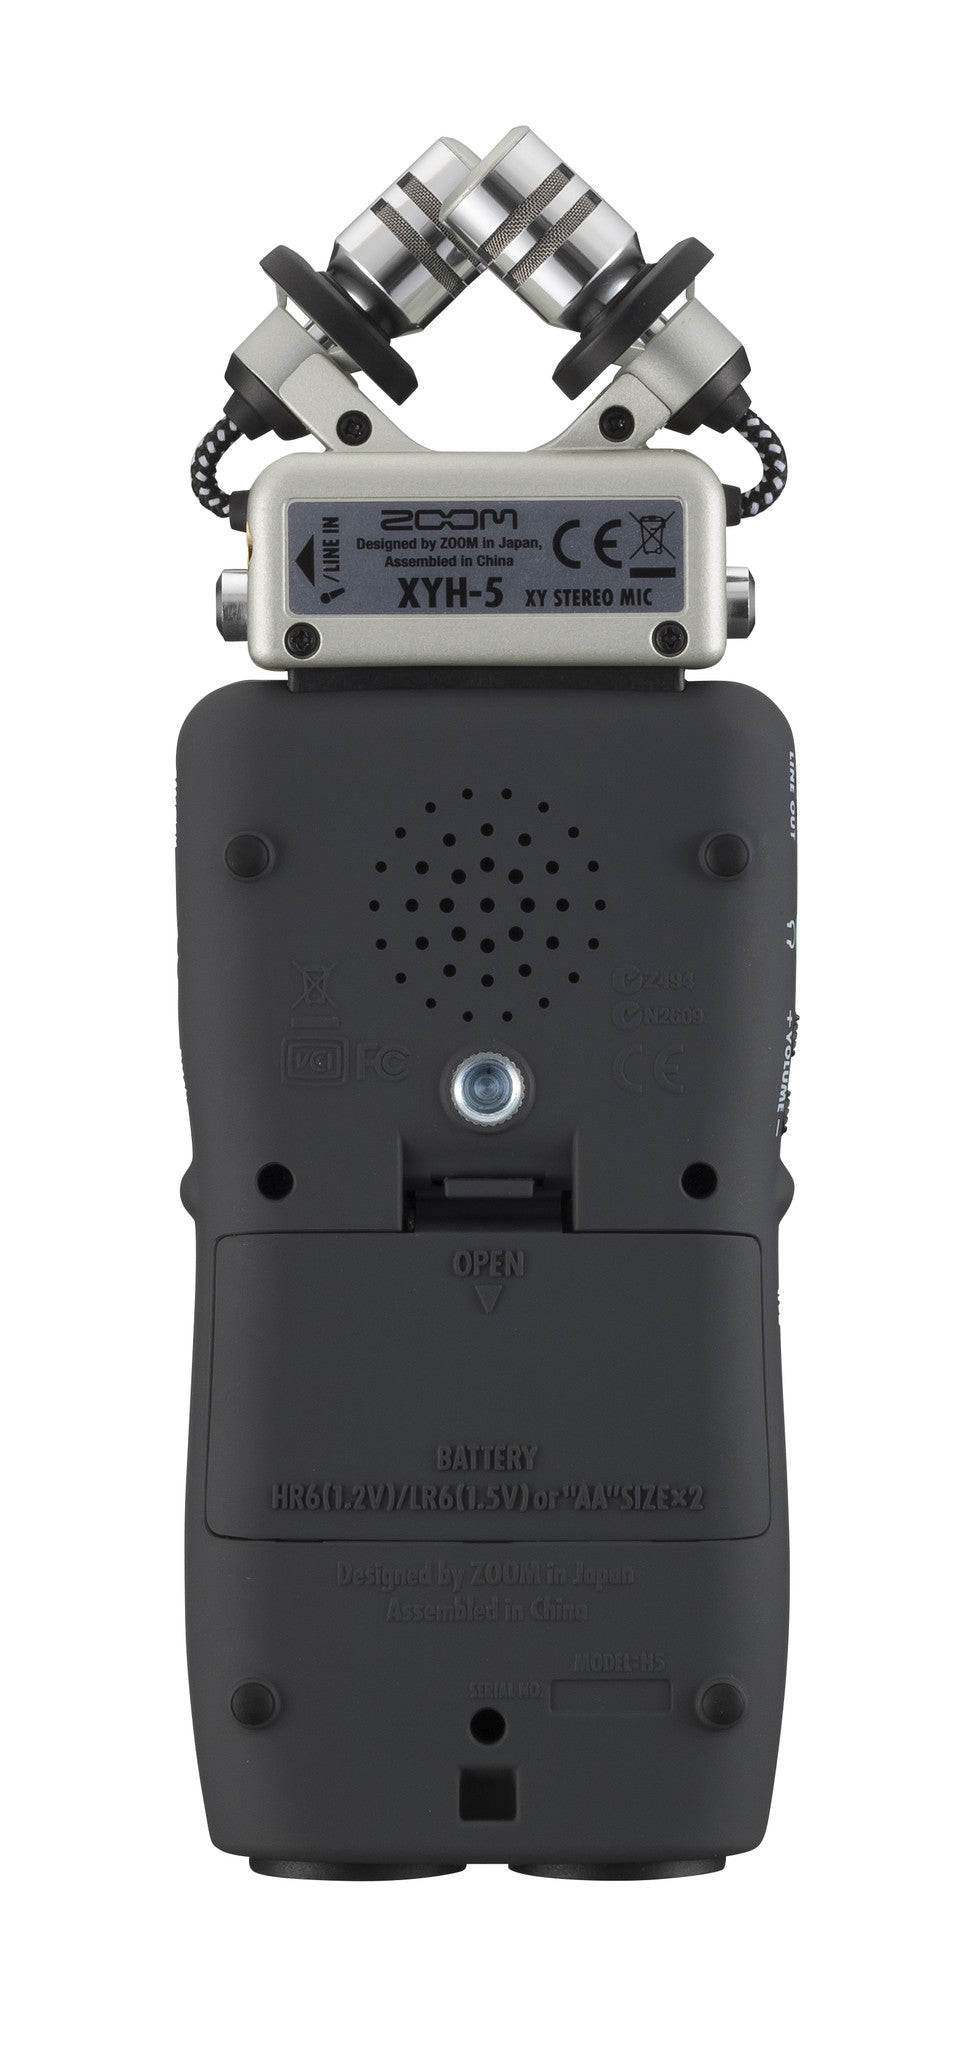 Zoom H5 Handy Recorder, video audio microphones & recorders, Zoom - Pictureline  - 4